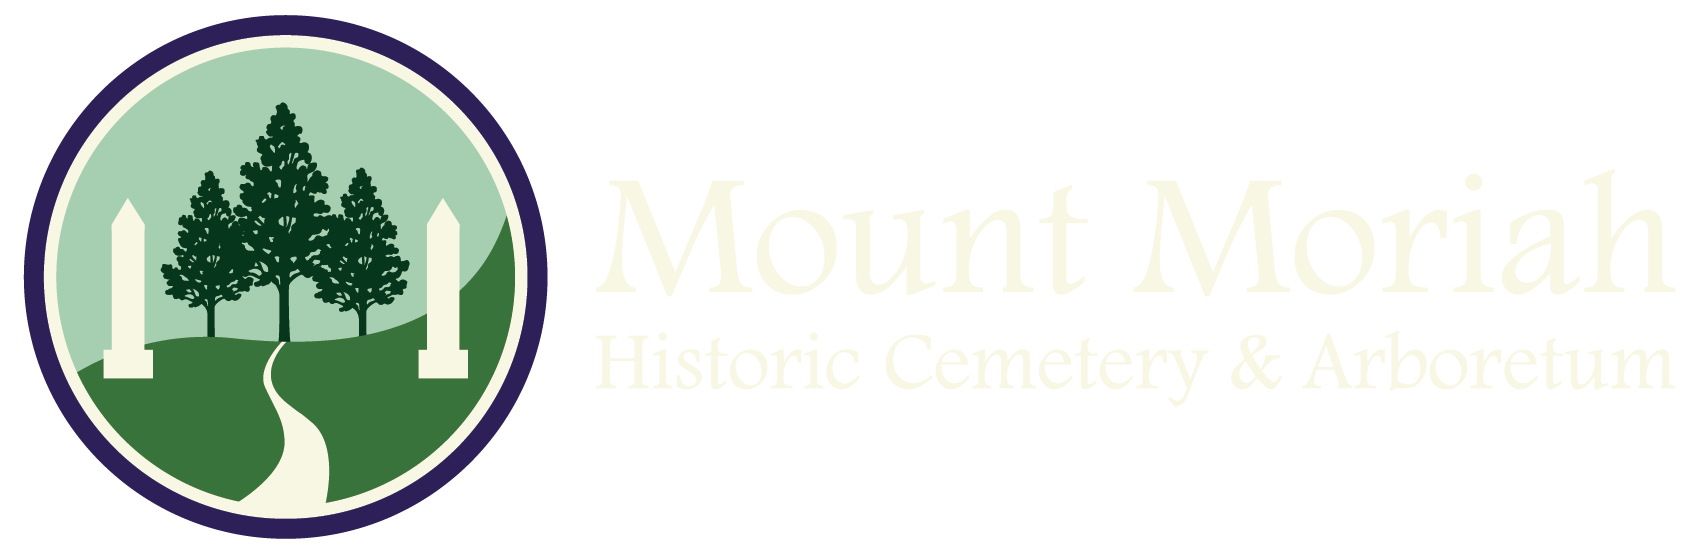 Mount Moriah Historic Cemetery and Arboretum logo